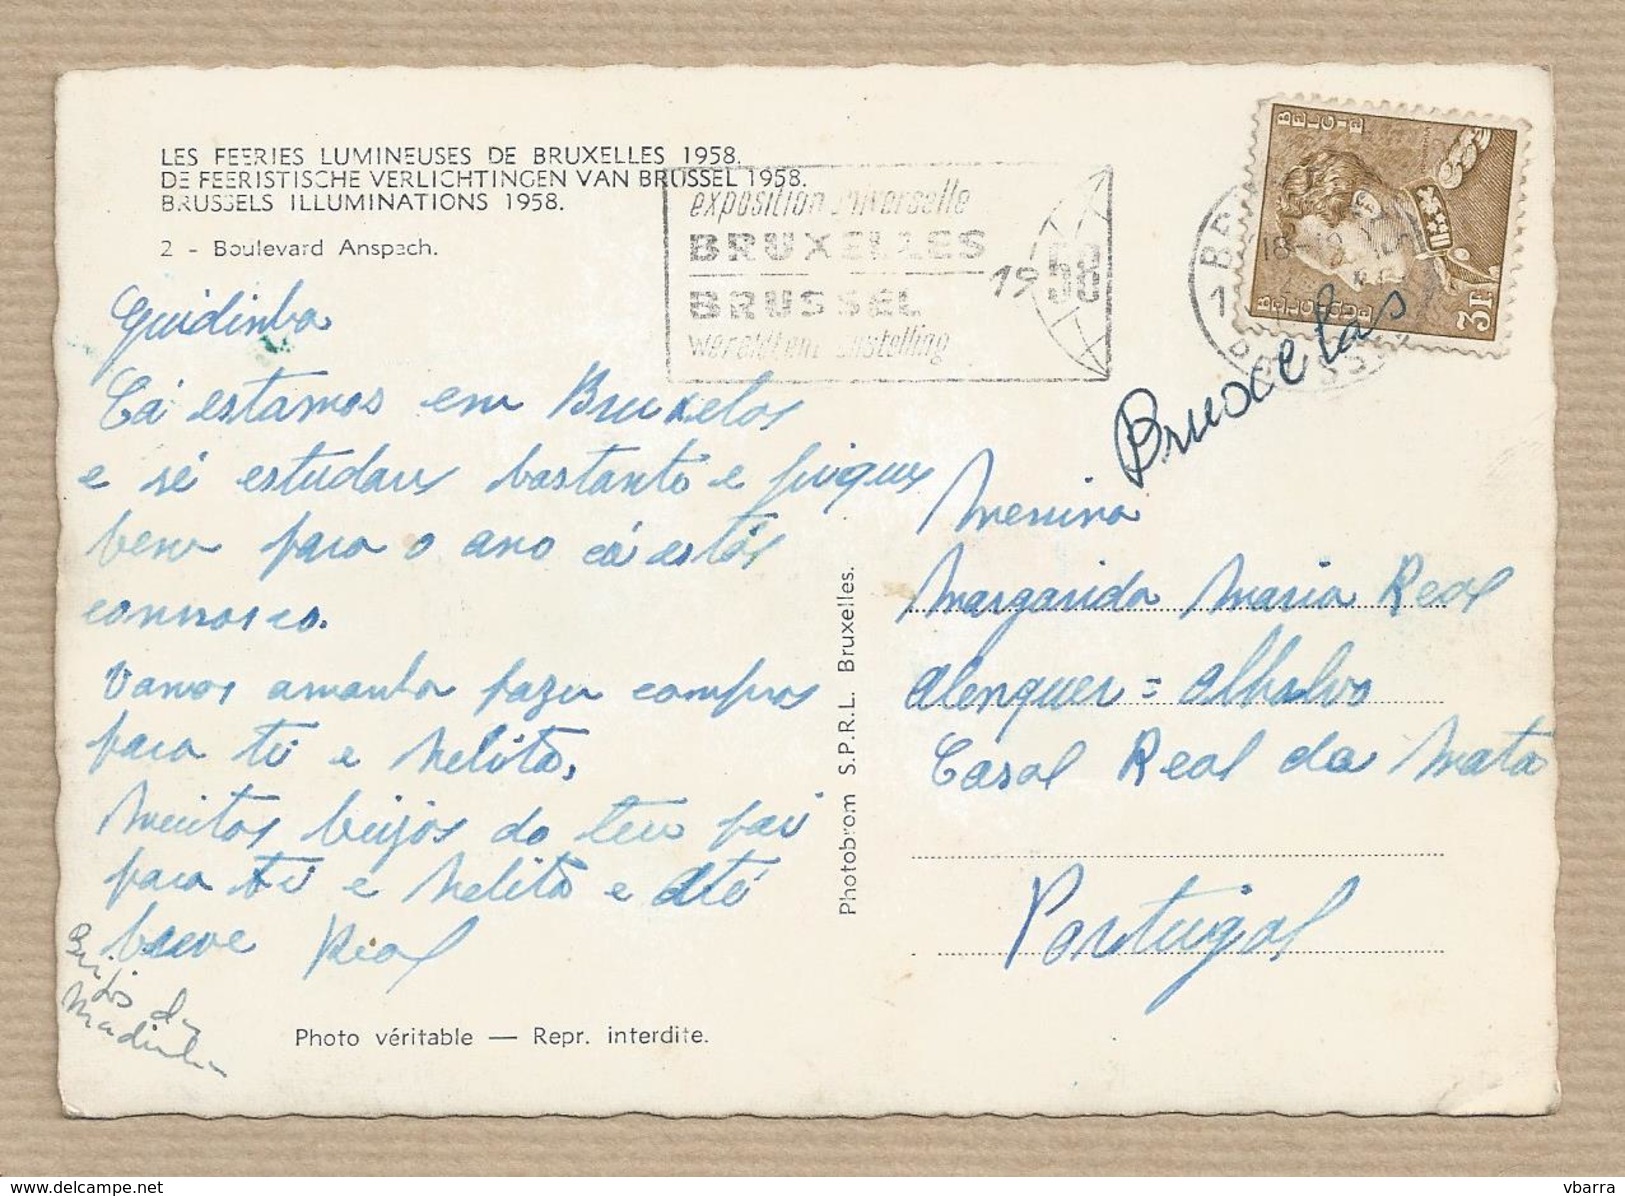 BELGIQUE Carte Postale Les Feeries Lumineuses De Bruxxeles 1958 Boulelevard Anspach. Timbre-poste Roi Leopold III - 3. F - Brüssel Bei Nacht